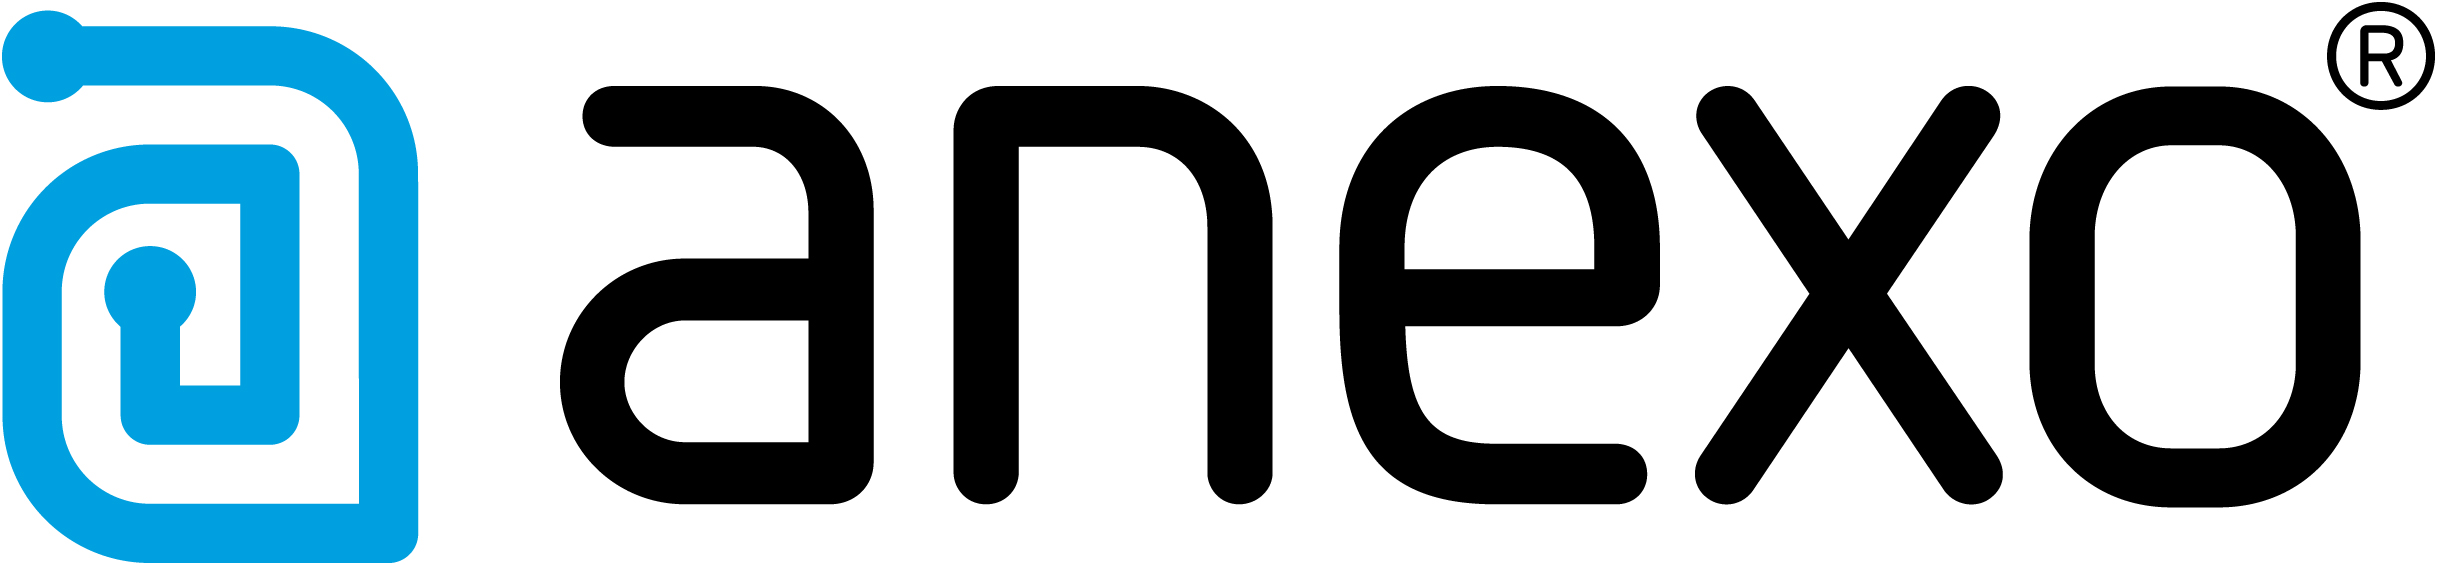 Logo Anexo